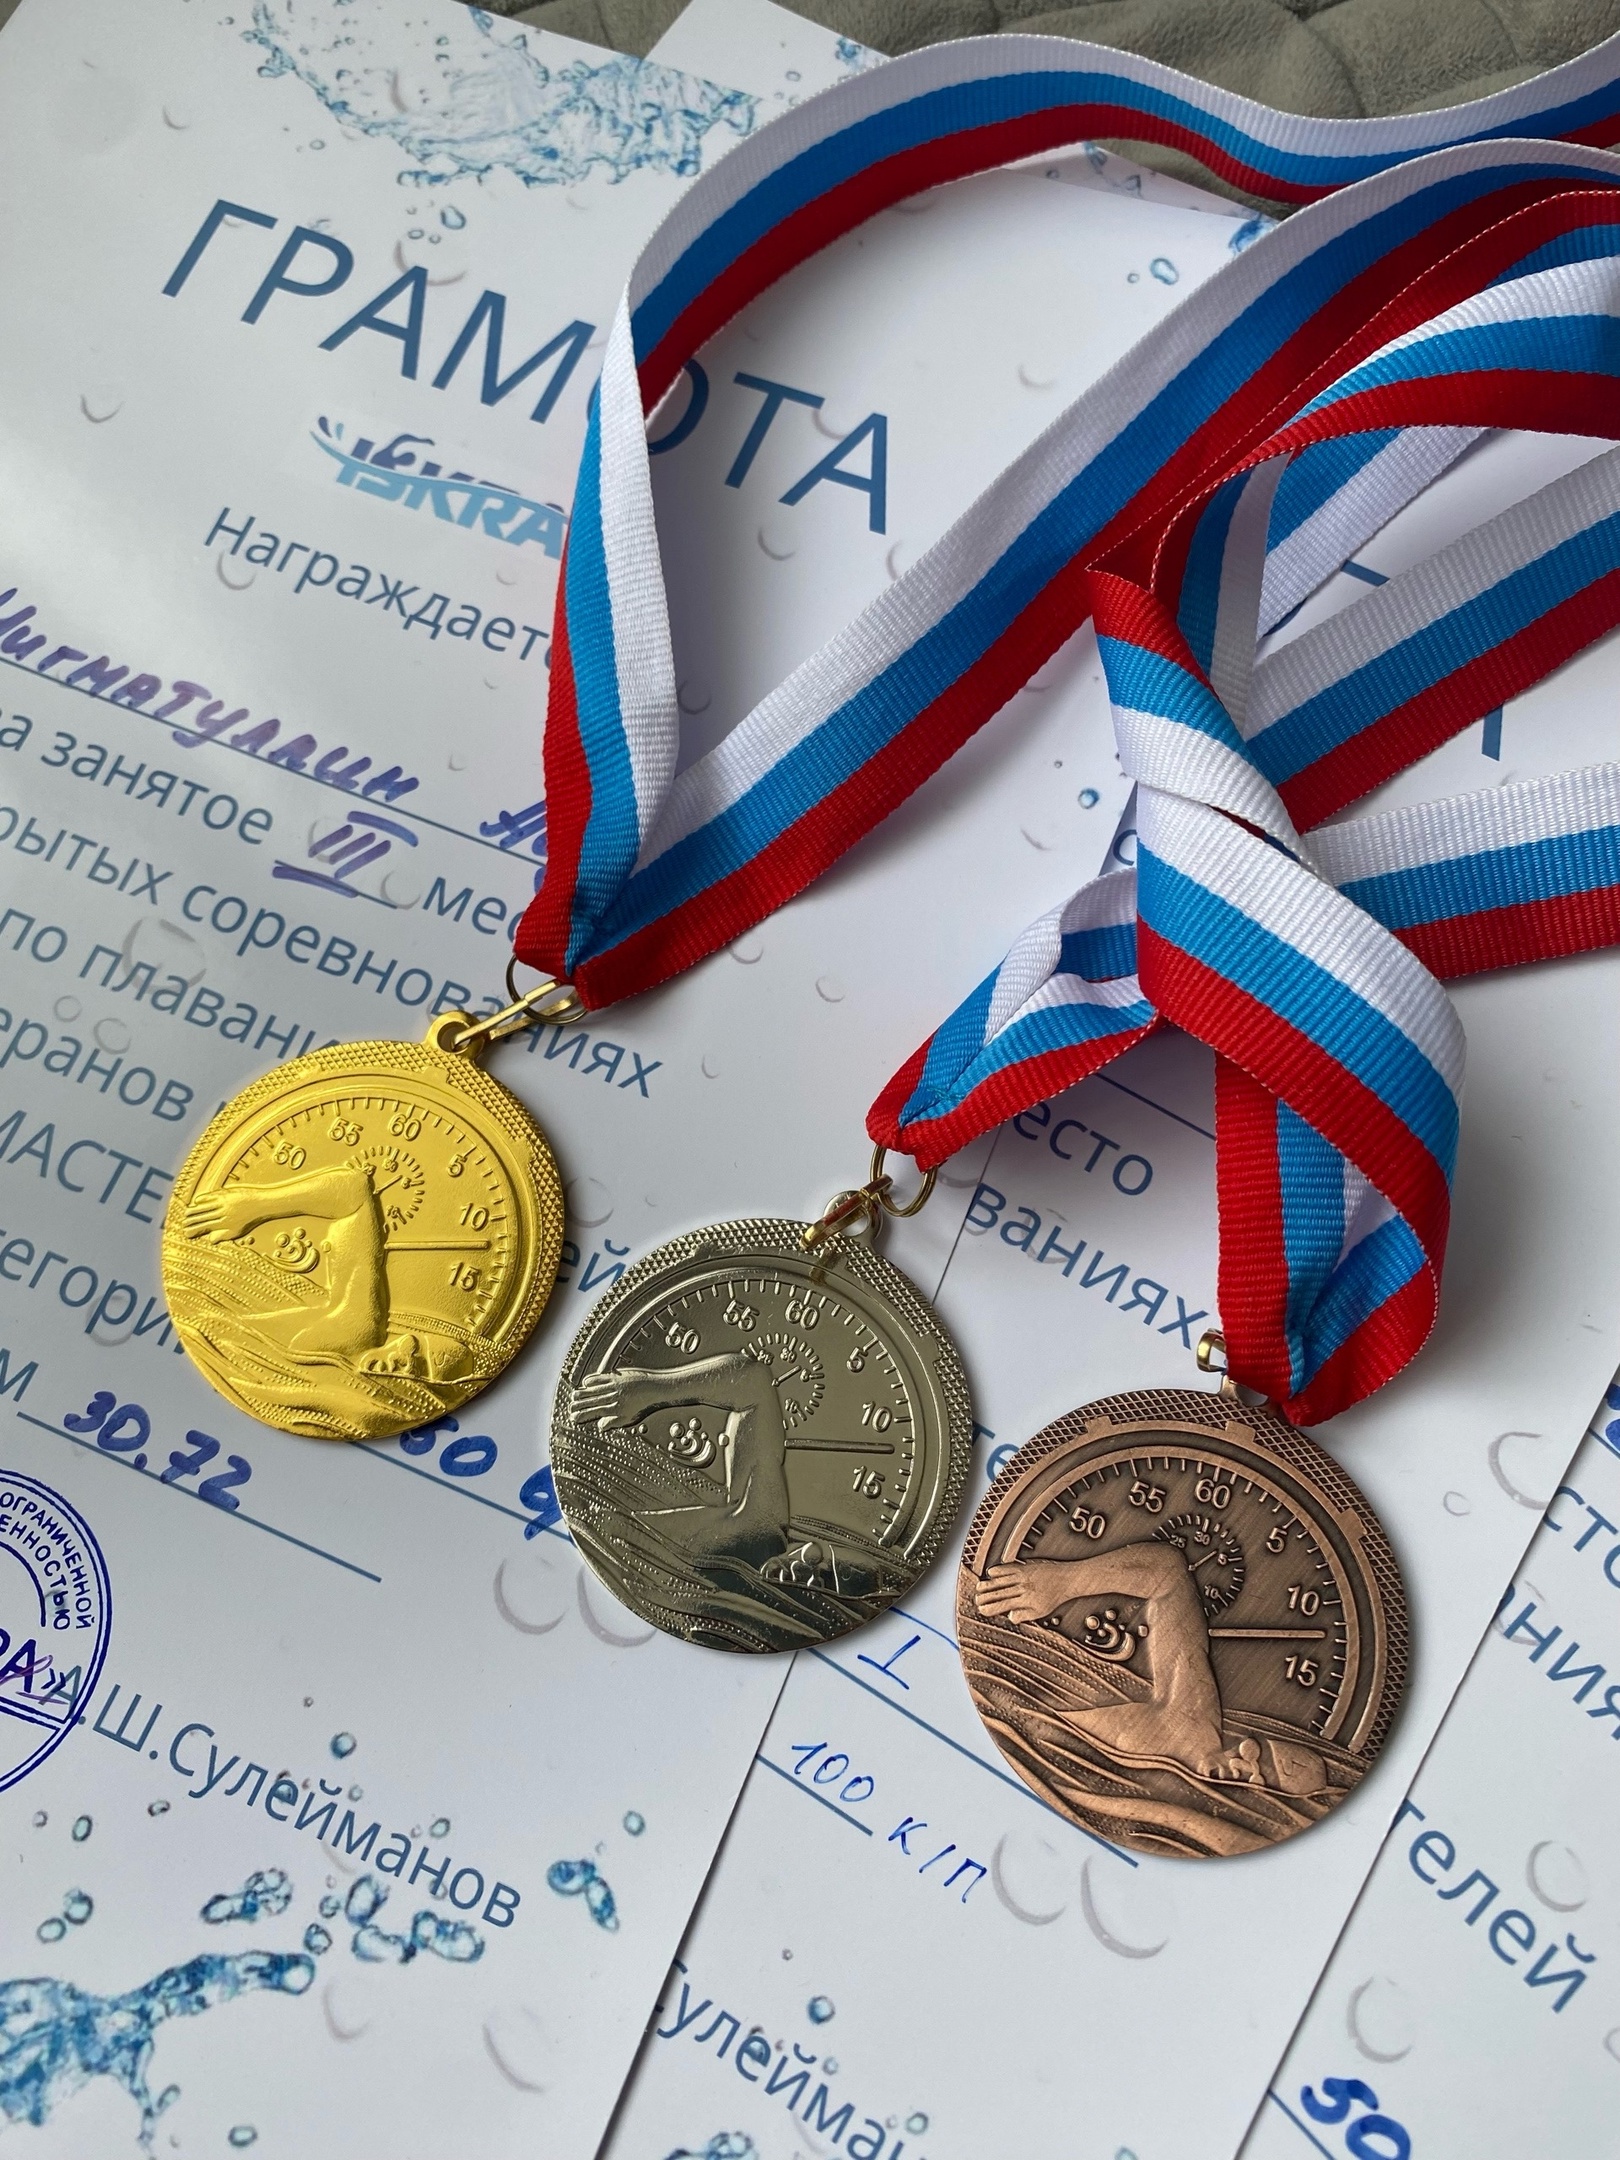  изображение для новости Взяли полный комплект медалей в заплывах «Мастерс»!